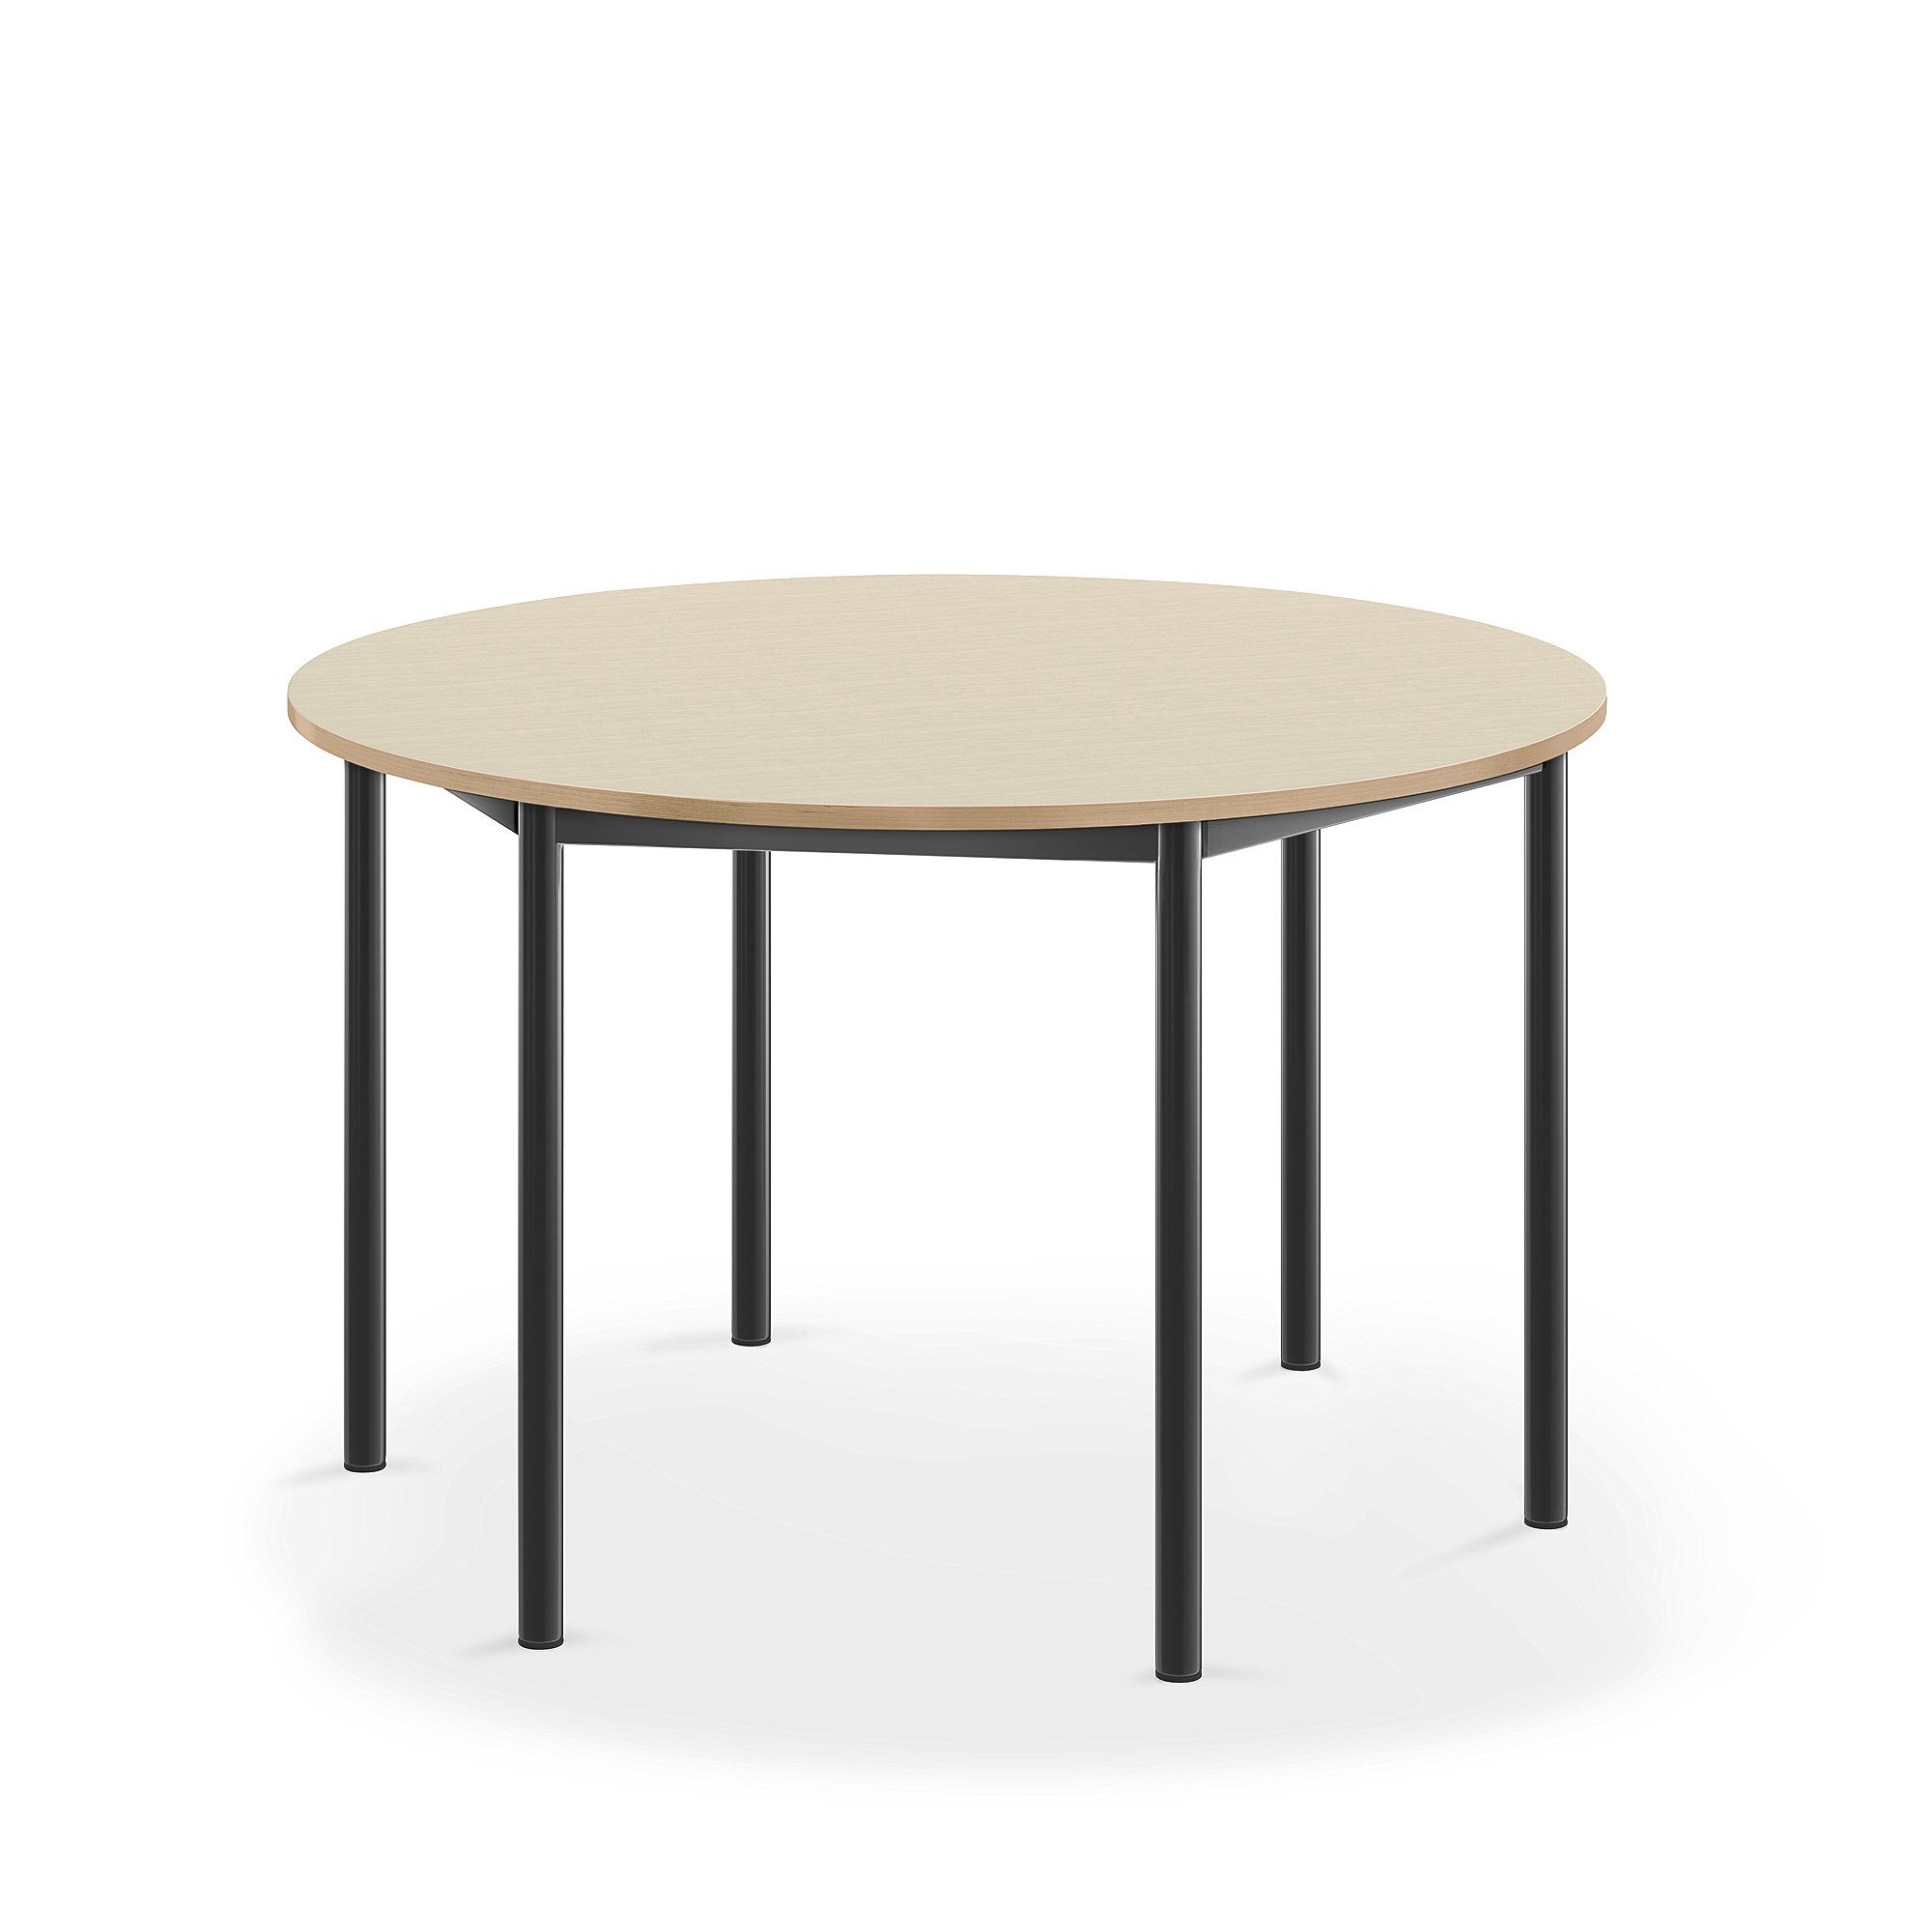 Stůl BORÅS, Ø1200x720 mm, antracitově šedé nohy, HPL deska, bříza